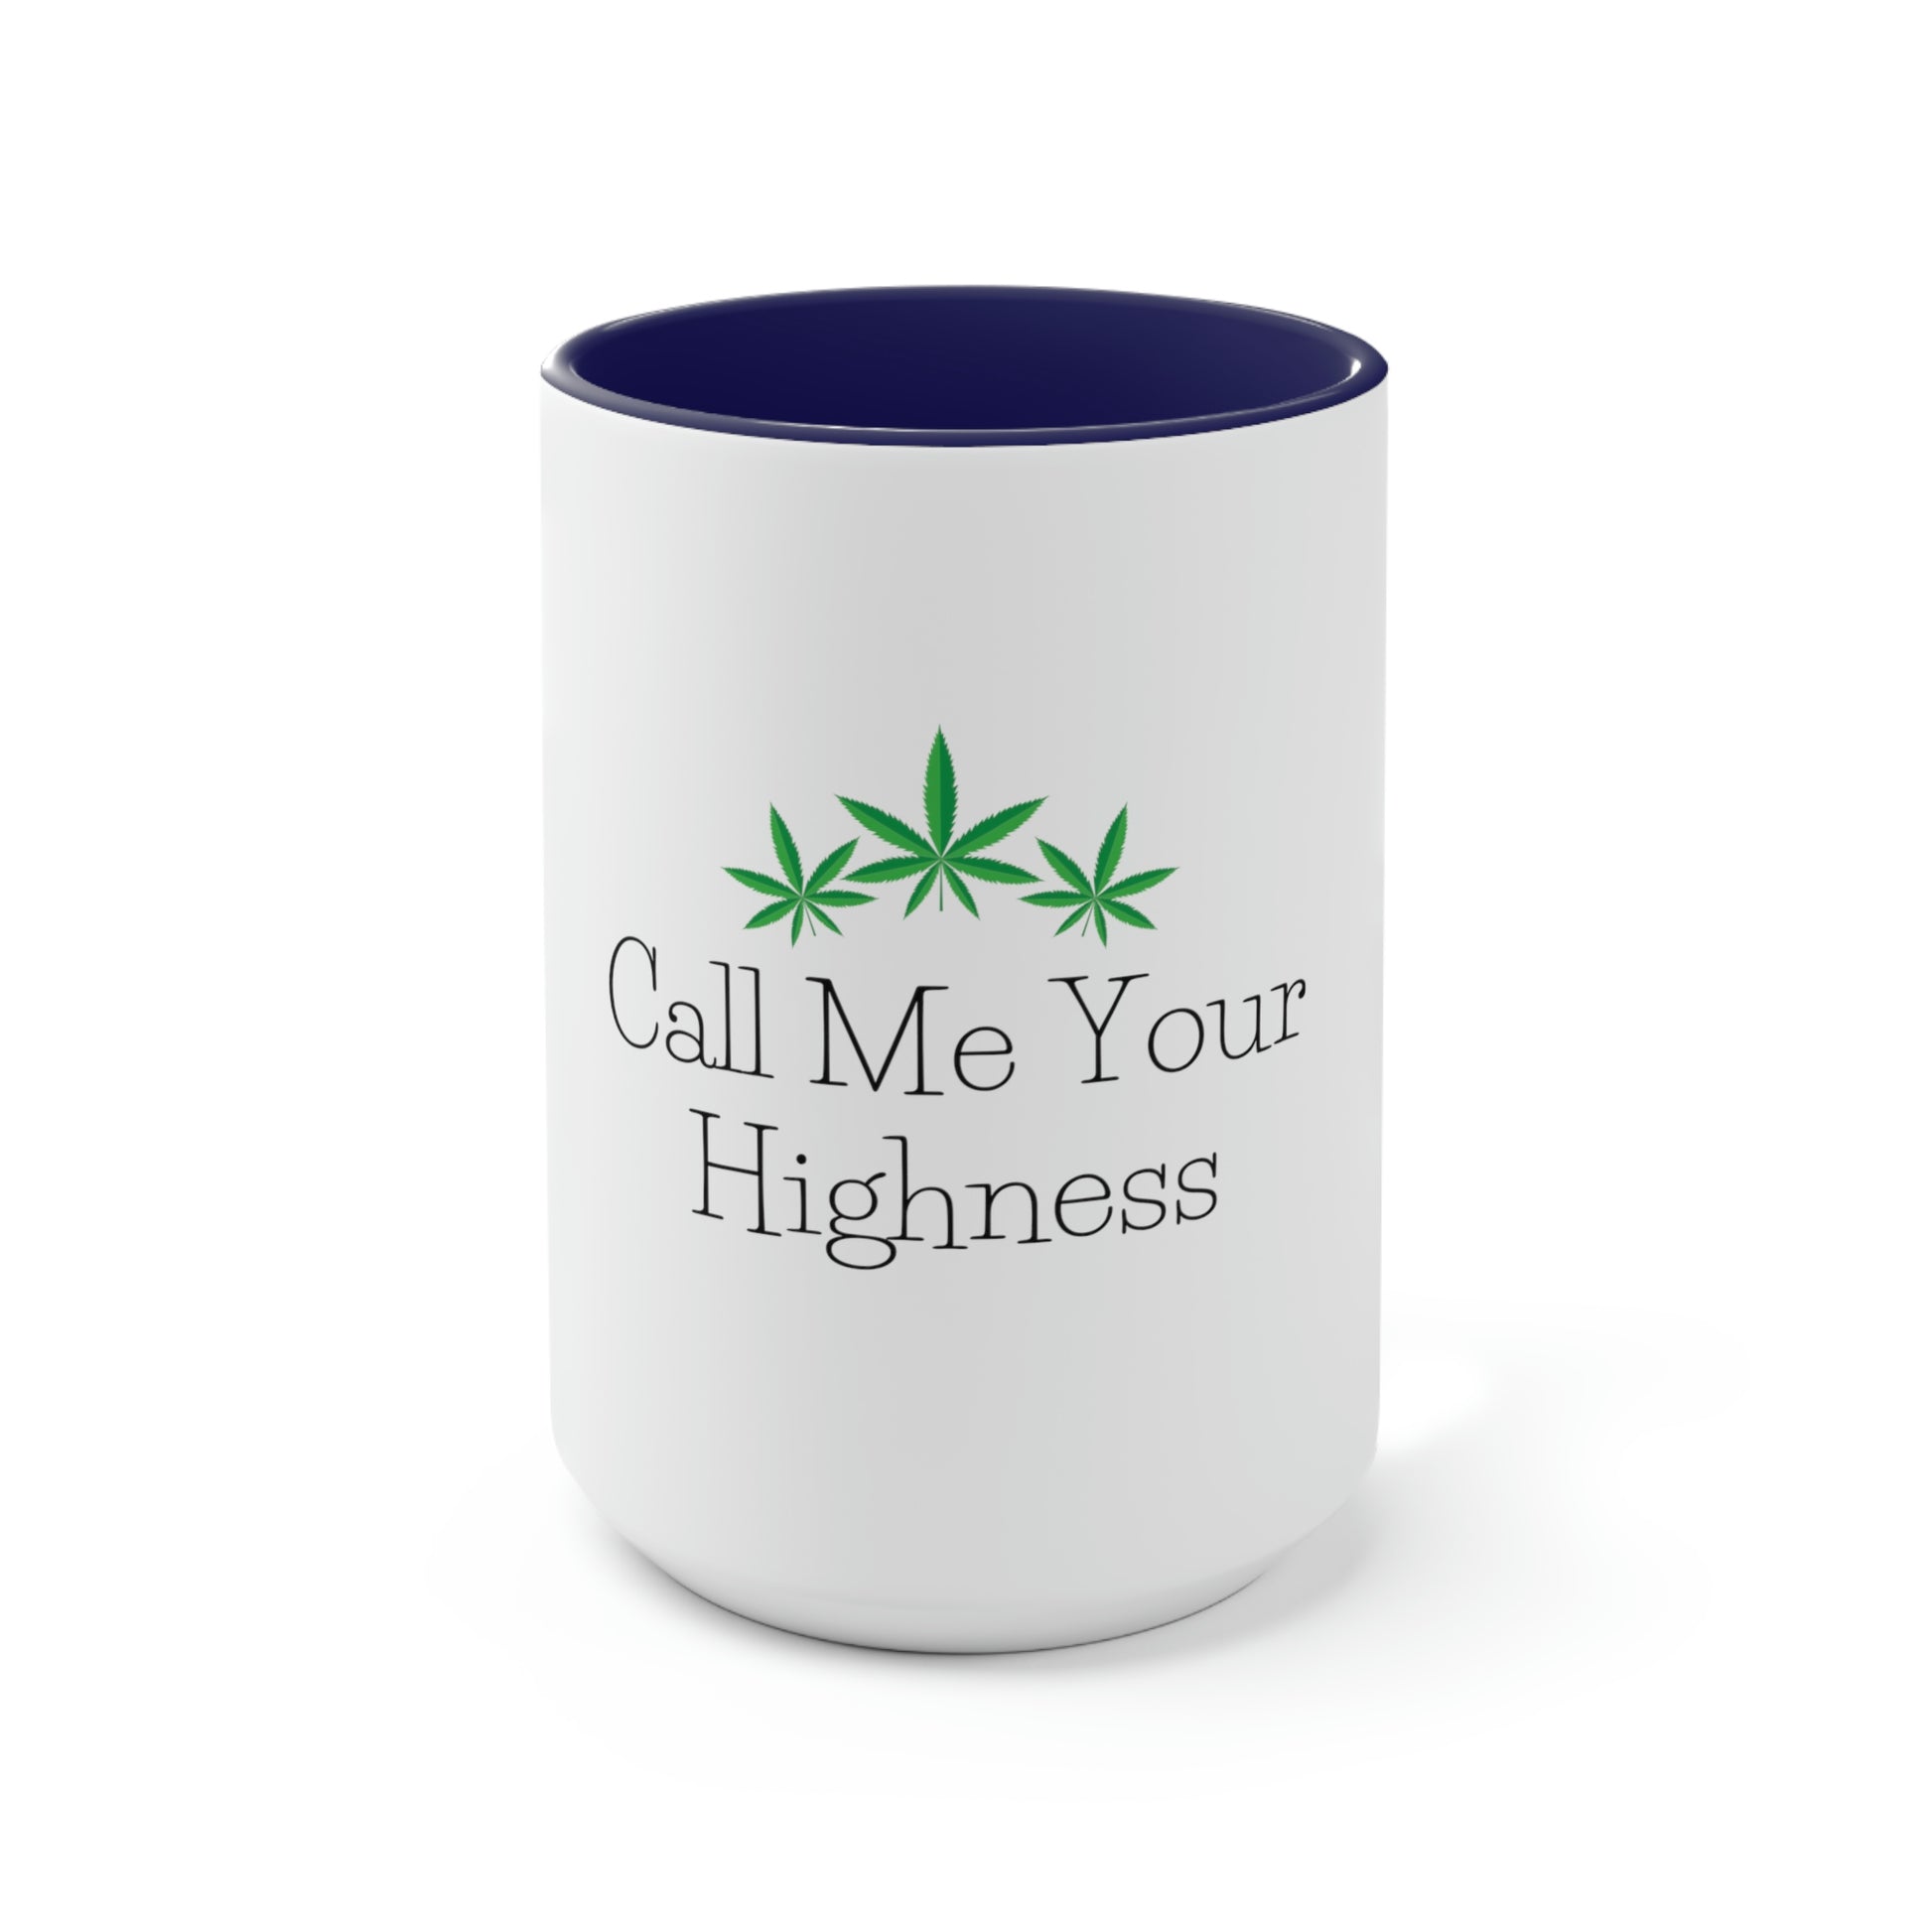 Call Me Your Highness Coffee Mug